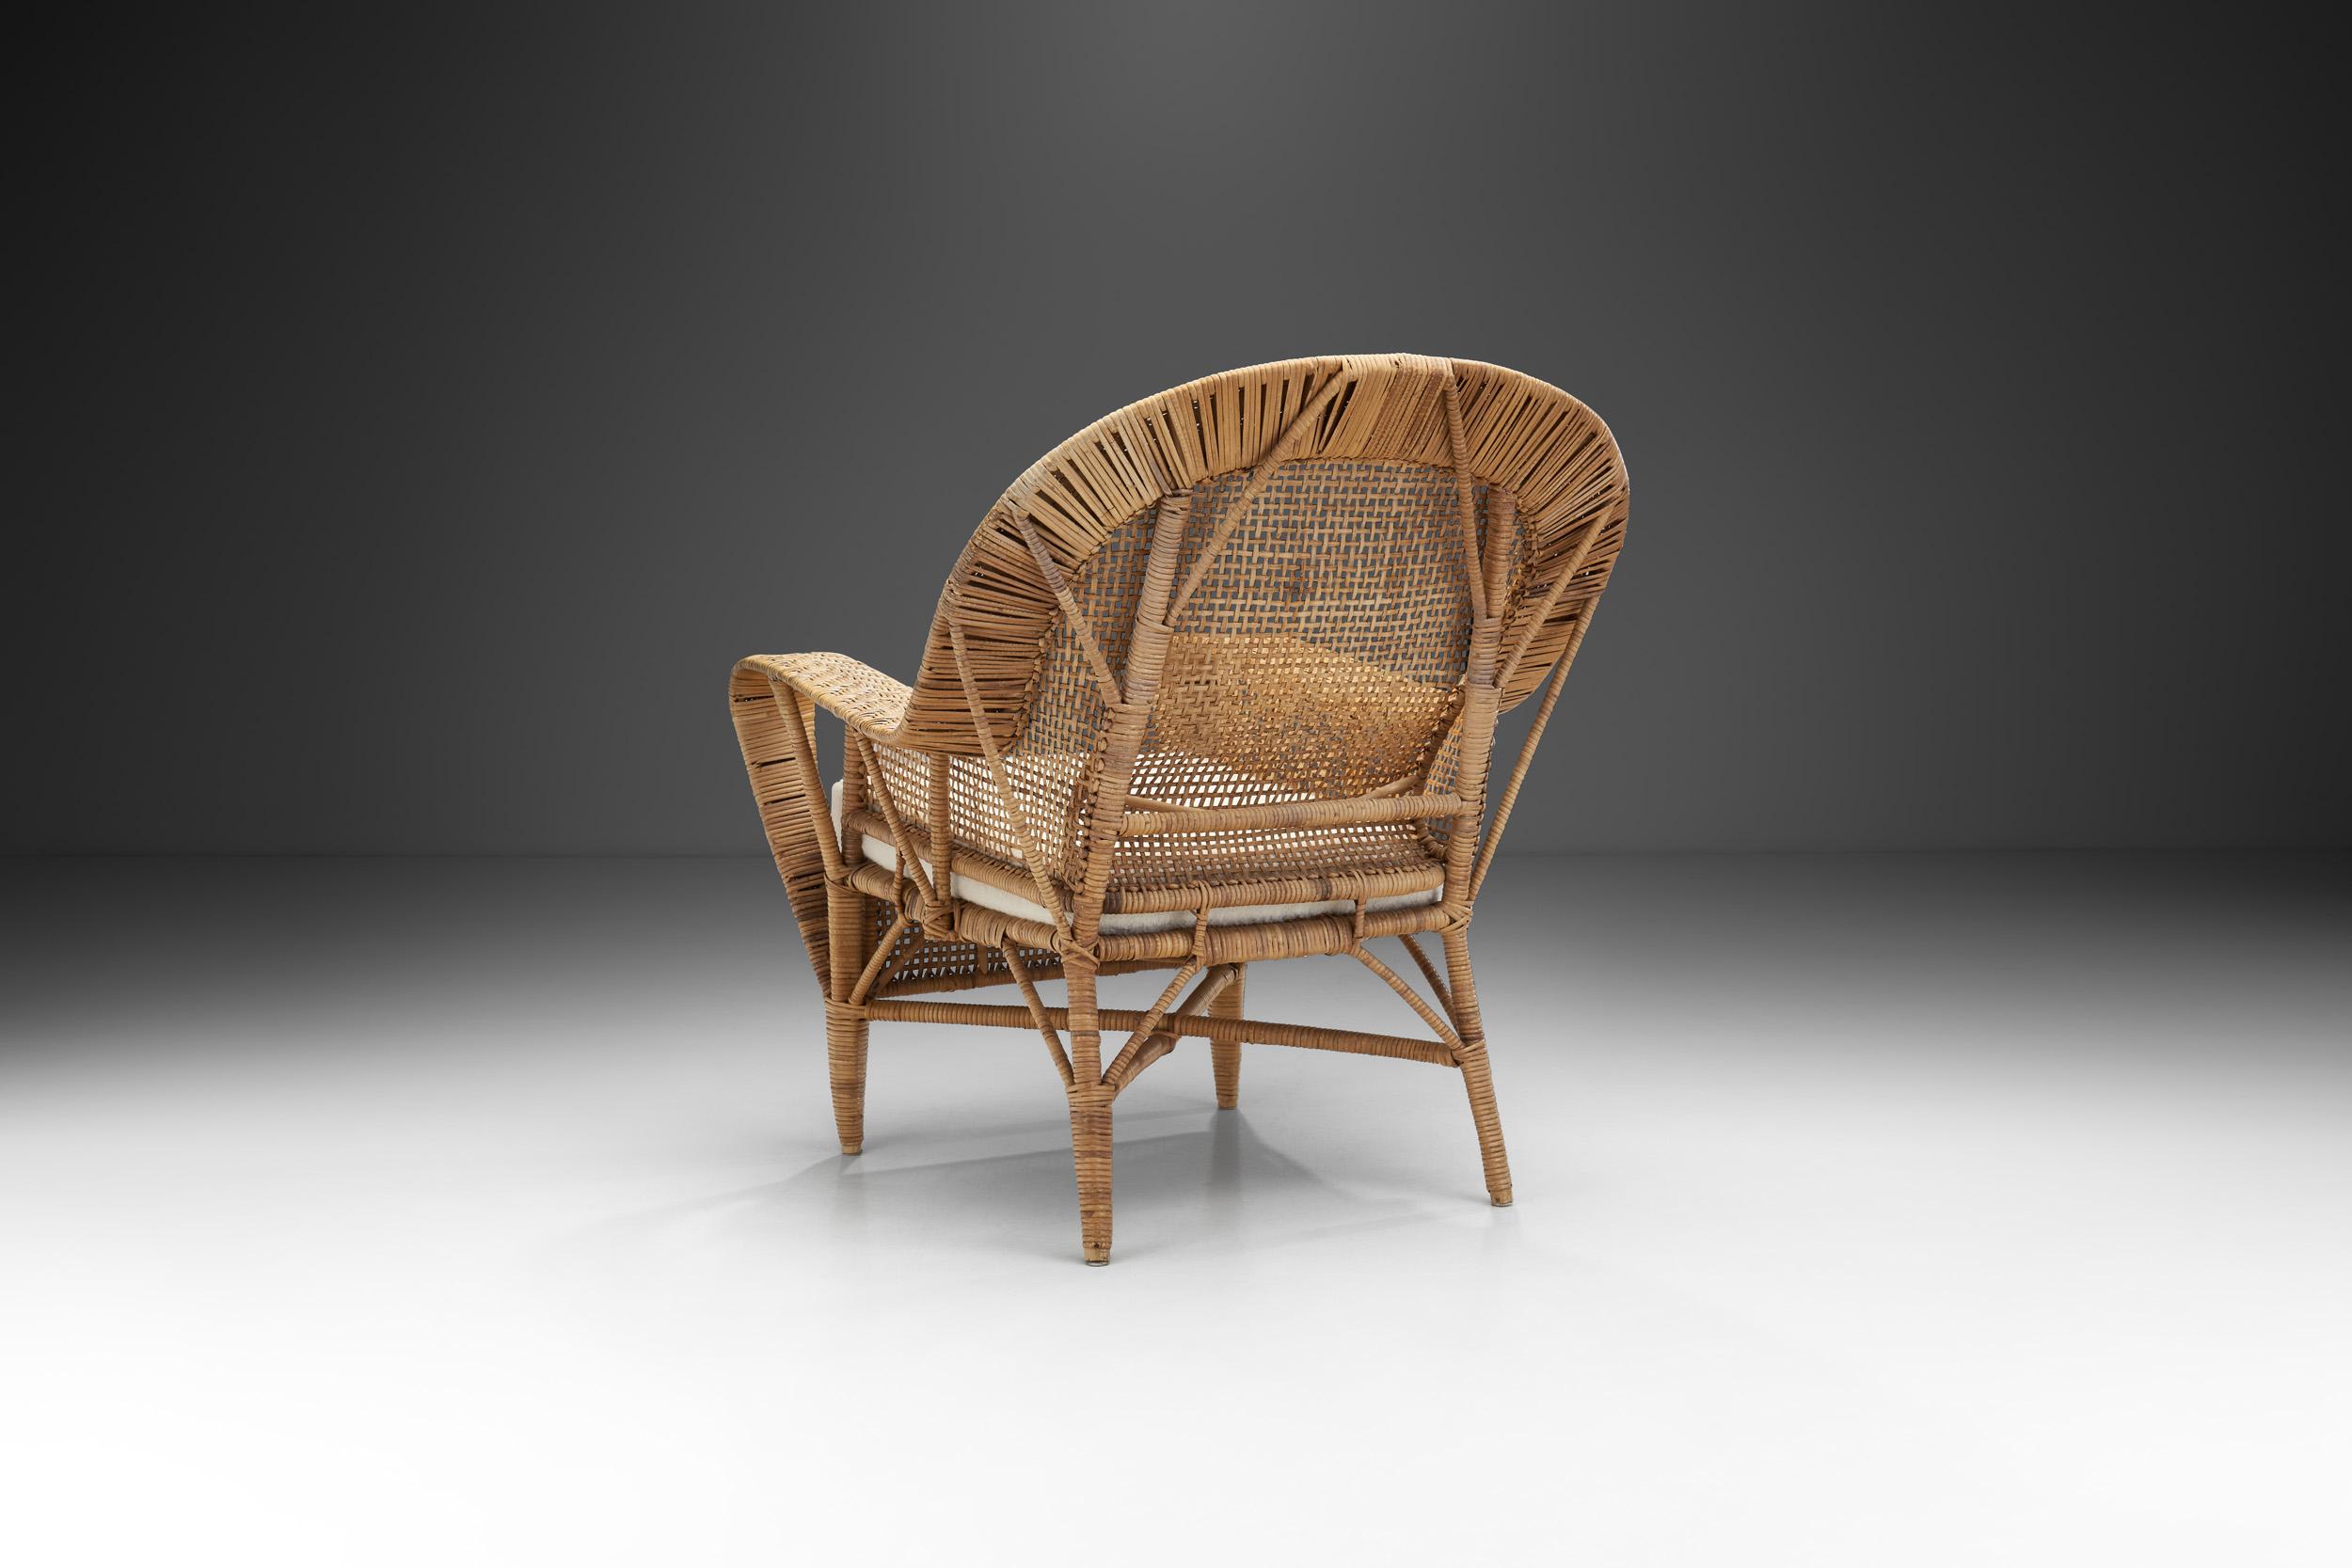 Danish Kay Fisker “Canton” Woven Wicker Lounge Chair for Robert Wengler, Denmark 1950s